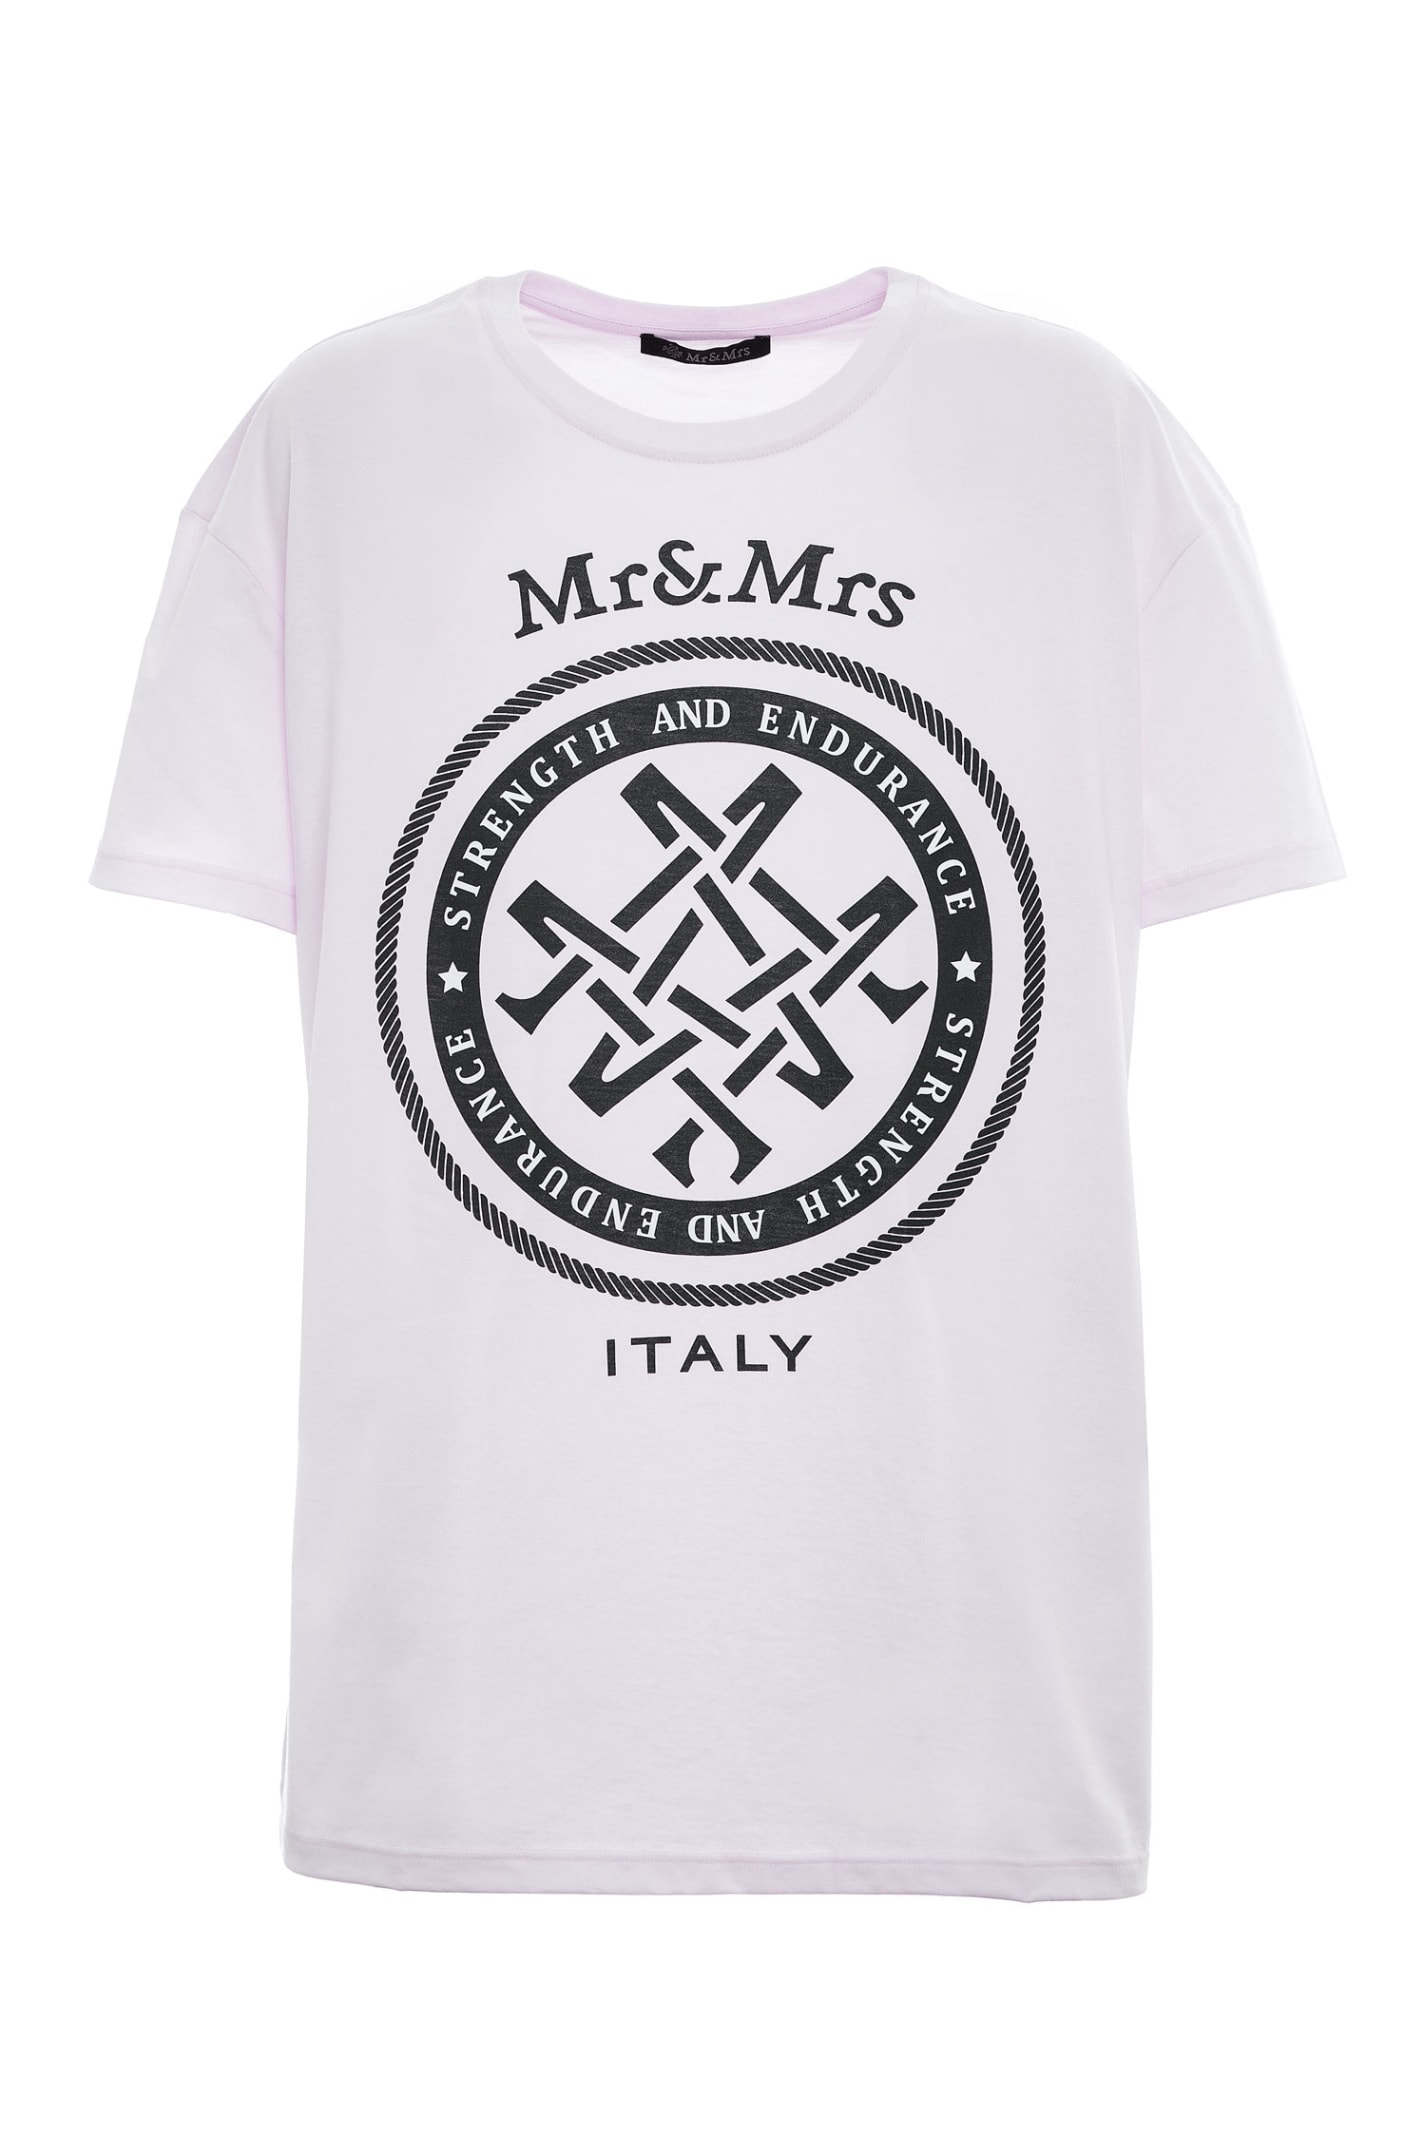 Mr & Mrs Italy Unisex Oversized T-shirt